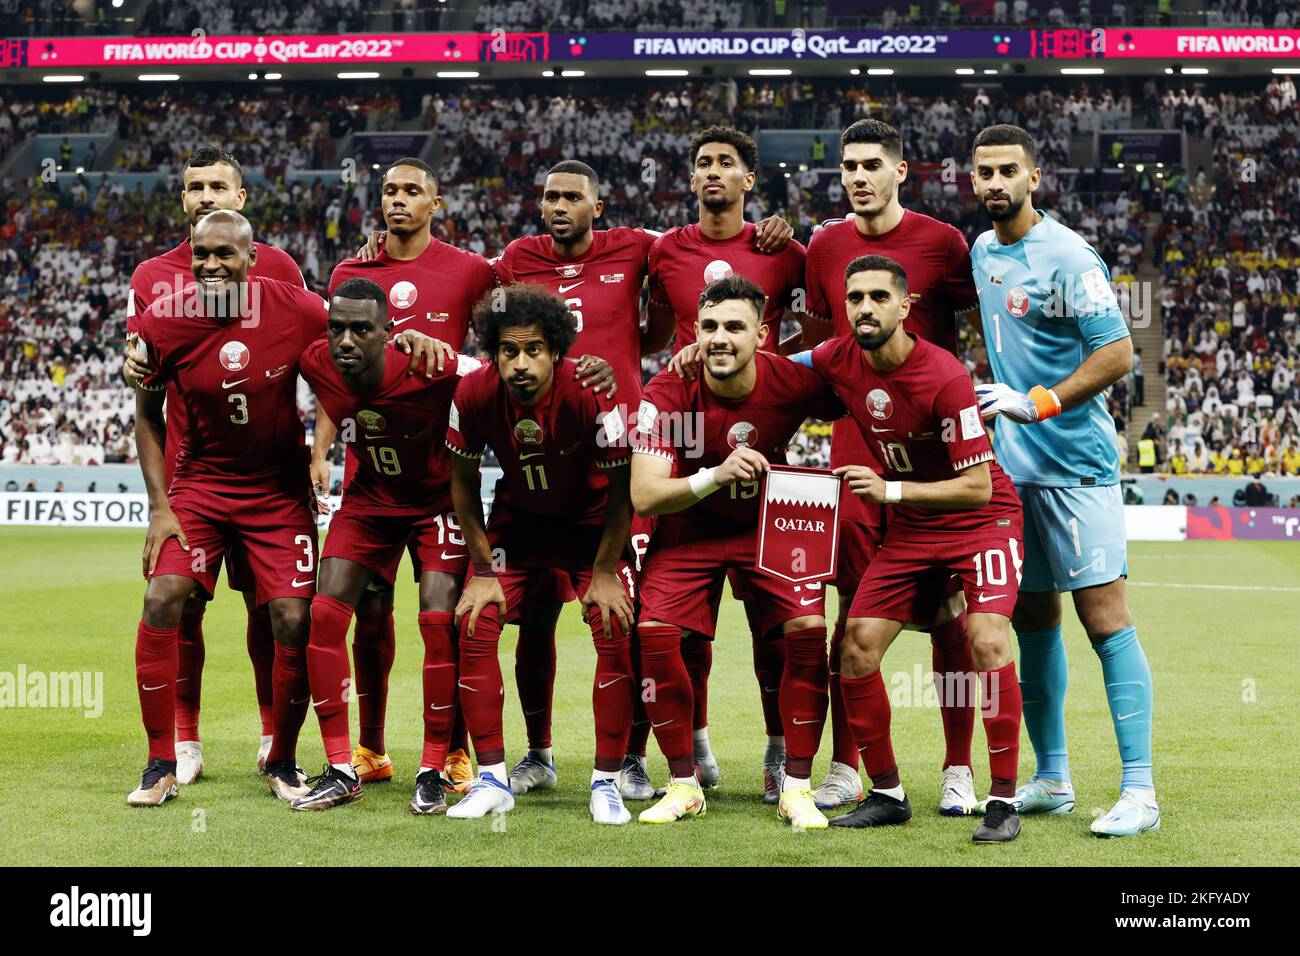 AL KHOR - Above (lr) Boualem Khoukhi of Qatar, Pedro Miguel of Qatar, Abdulaziz Hatem of Qatar, Homam Elamin of Qatar, Karim Boudiaf of Qatar, Qatar goalkeeper Saad Al Sheeb. Below (l-r) Abdelkarim Hasan Fadlalla of Qatar, Almoez Ali of Qatar, Akram Afif of Qatar, Bassam Al-Rawi of Qatar, Hassan Al Haidos of Qatar during the FIFA World Cup Qatar 2022 group A match between Qatar and Ecuador at the Al Bayt Stadium on November 20, 2022 in Al Khor, Qatar. AP | Dutch Height | MAURICE OF STONE Stock Photo